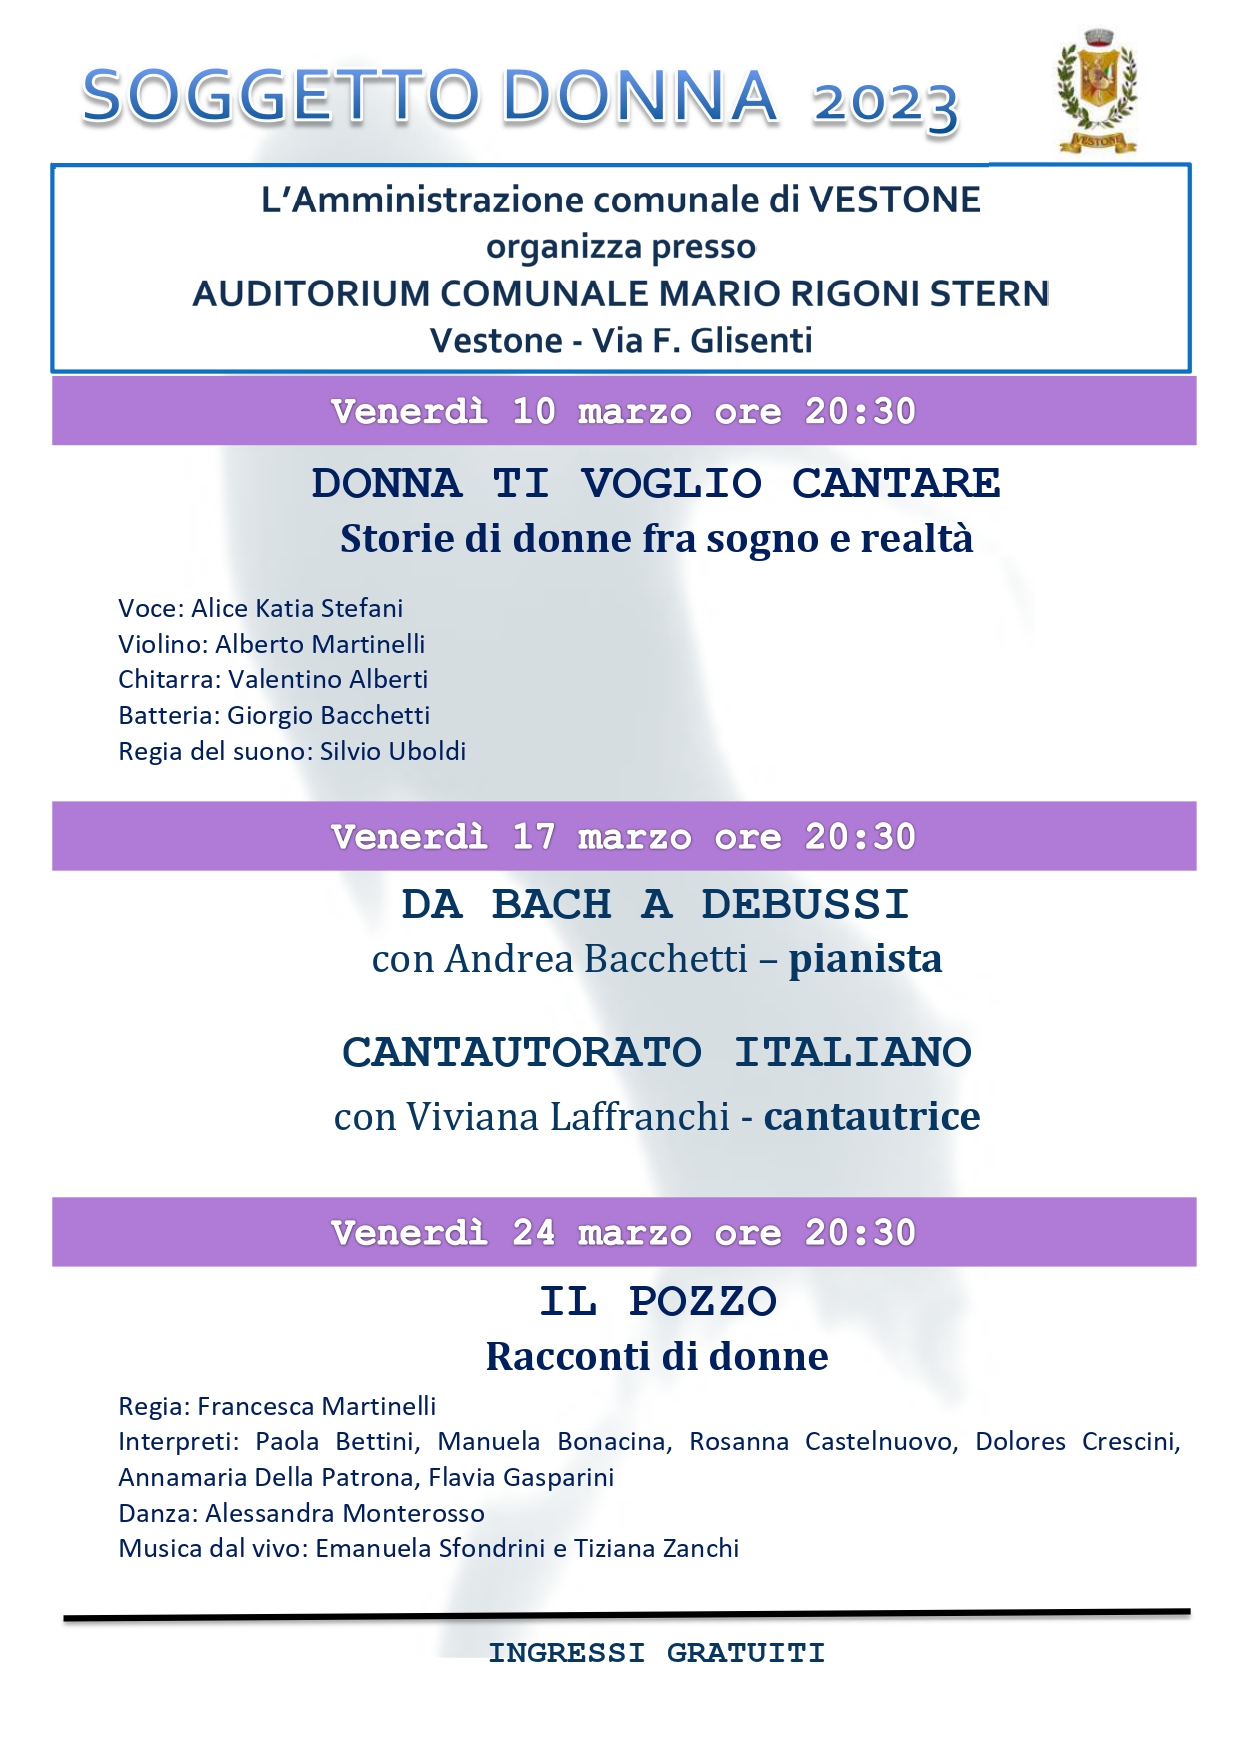 SOGGETTO DONNA - AUDITORIUM MARIO RIGONI STERN, MARZO 2023